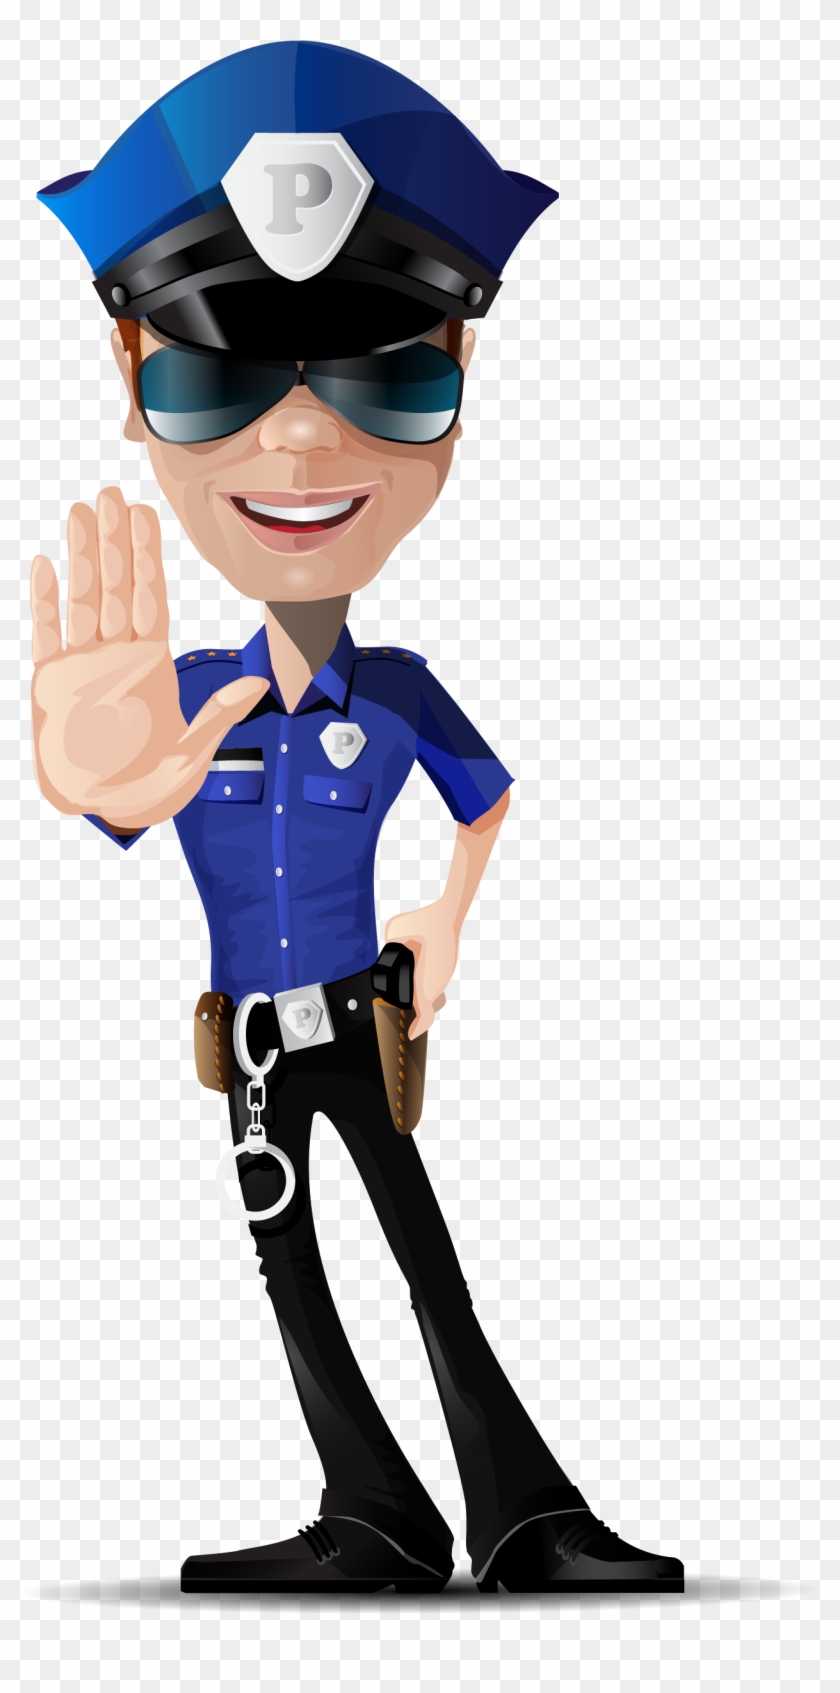 Police Officer Euclidean Vector Police Car - Policeman Vector Character #447365